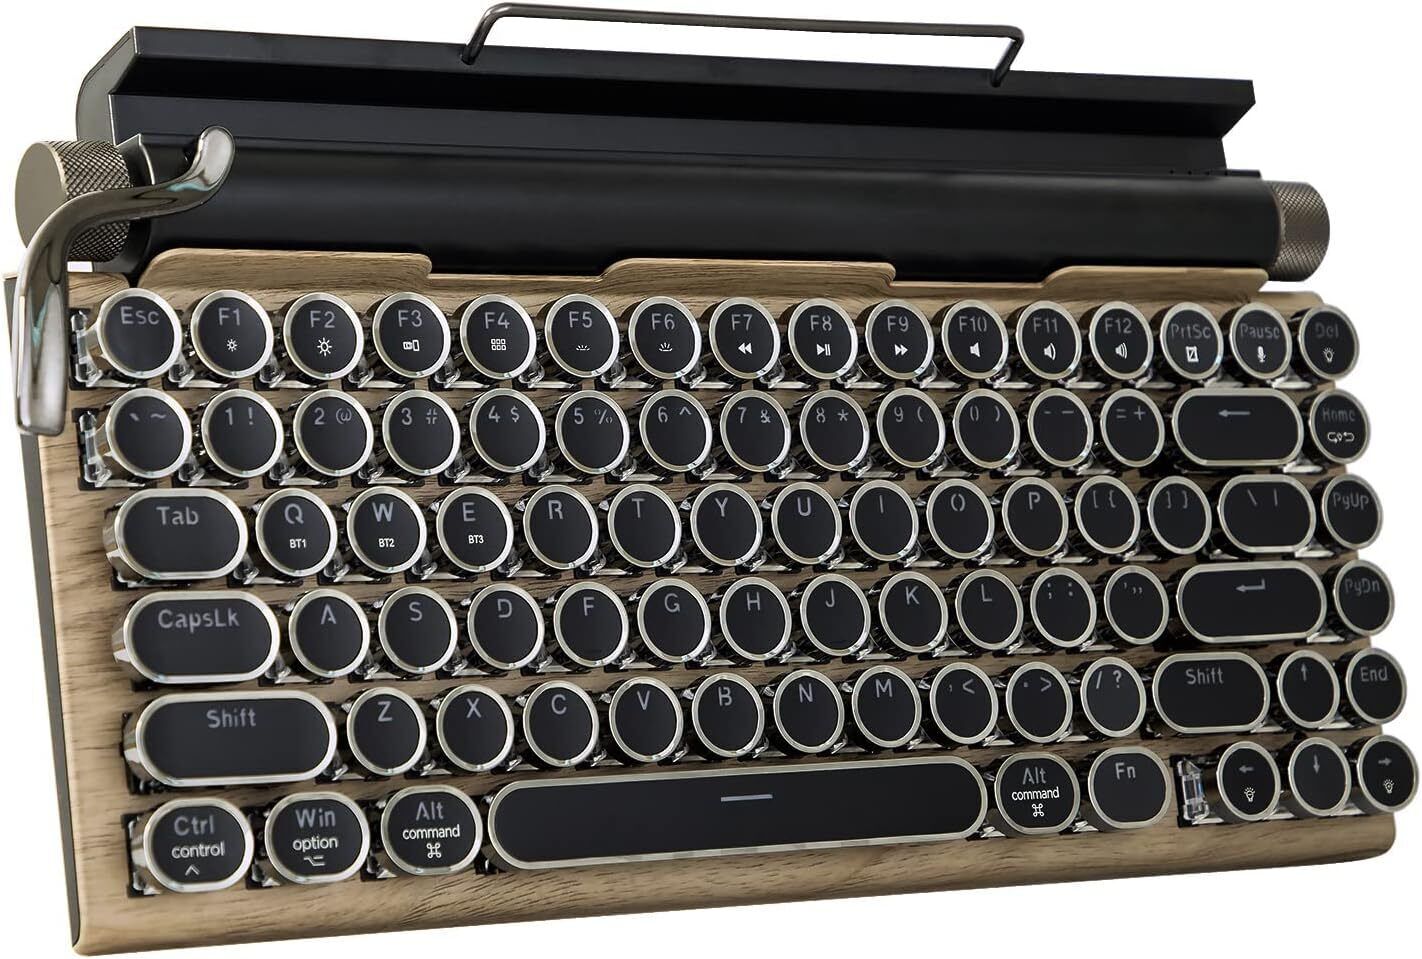 Typewriter-Style Retro Mechanical Keyboard LED Backlight 83 Keys Bluetooth